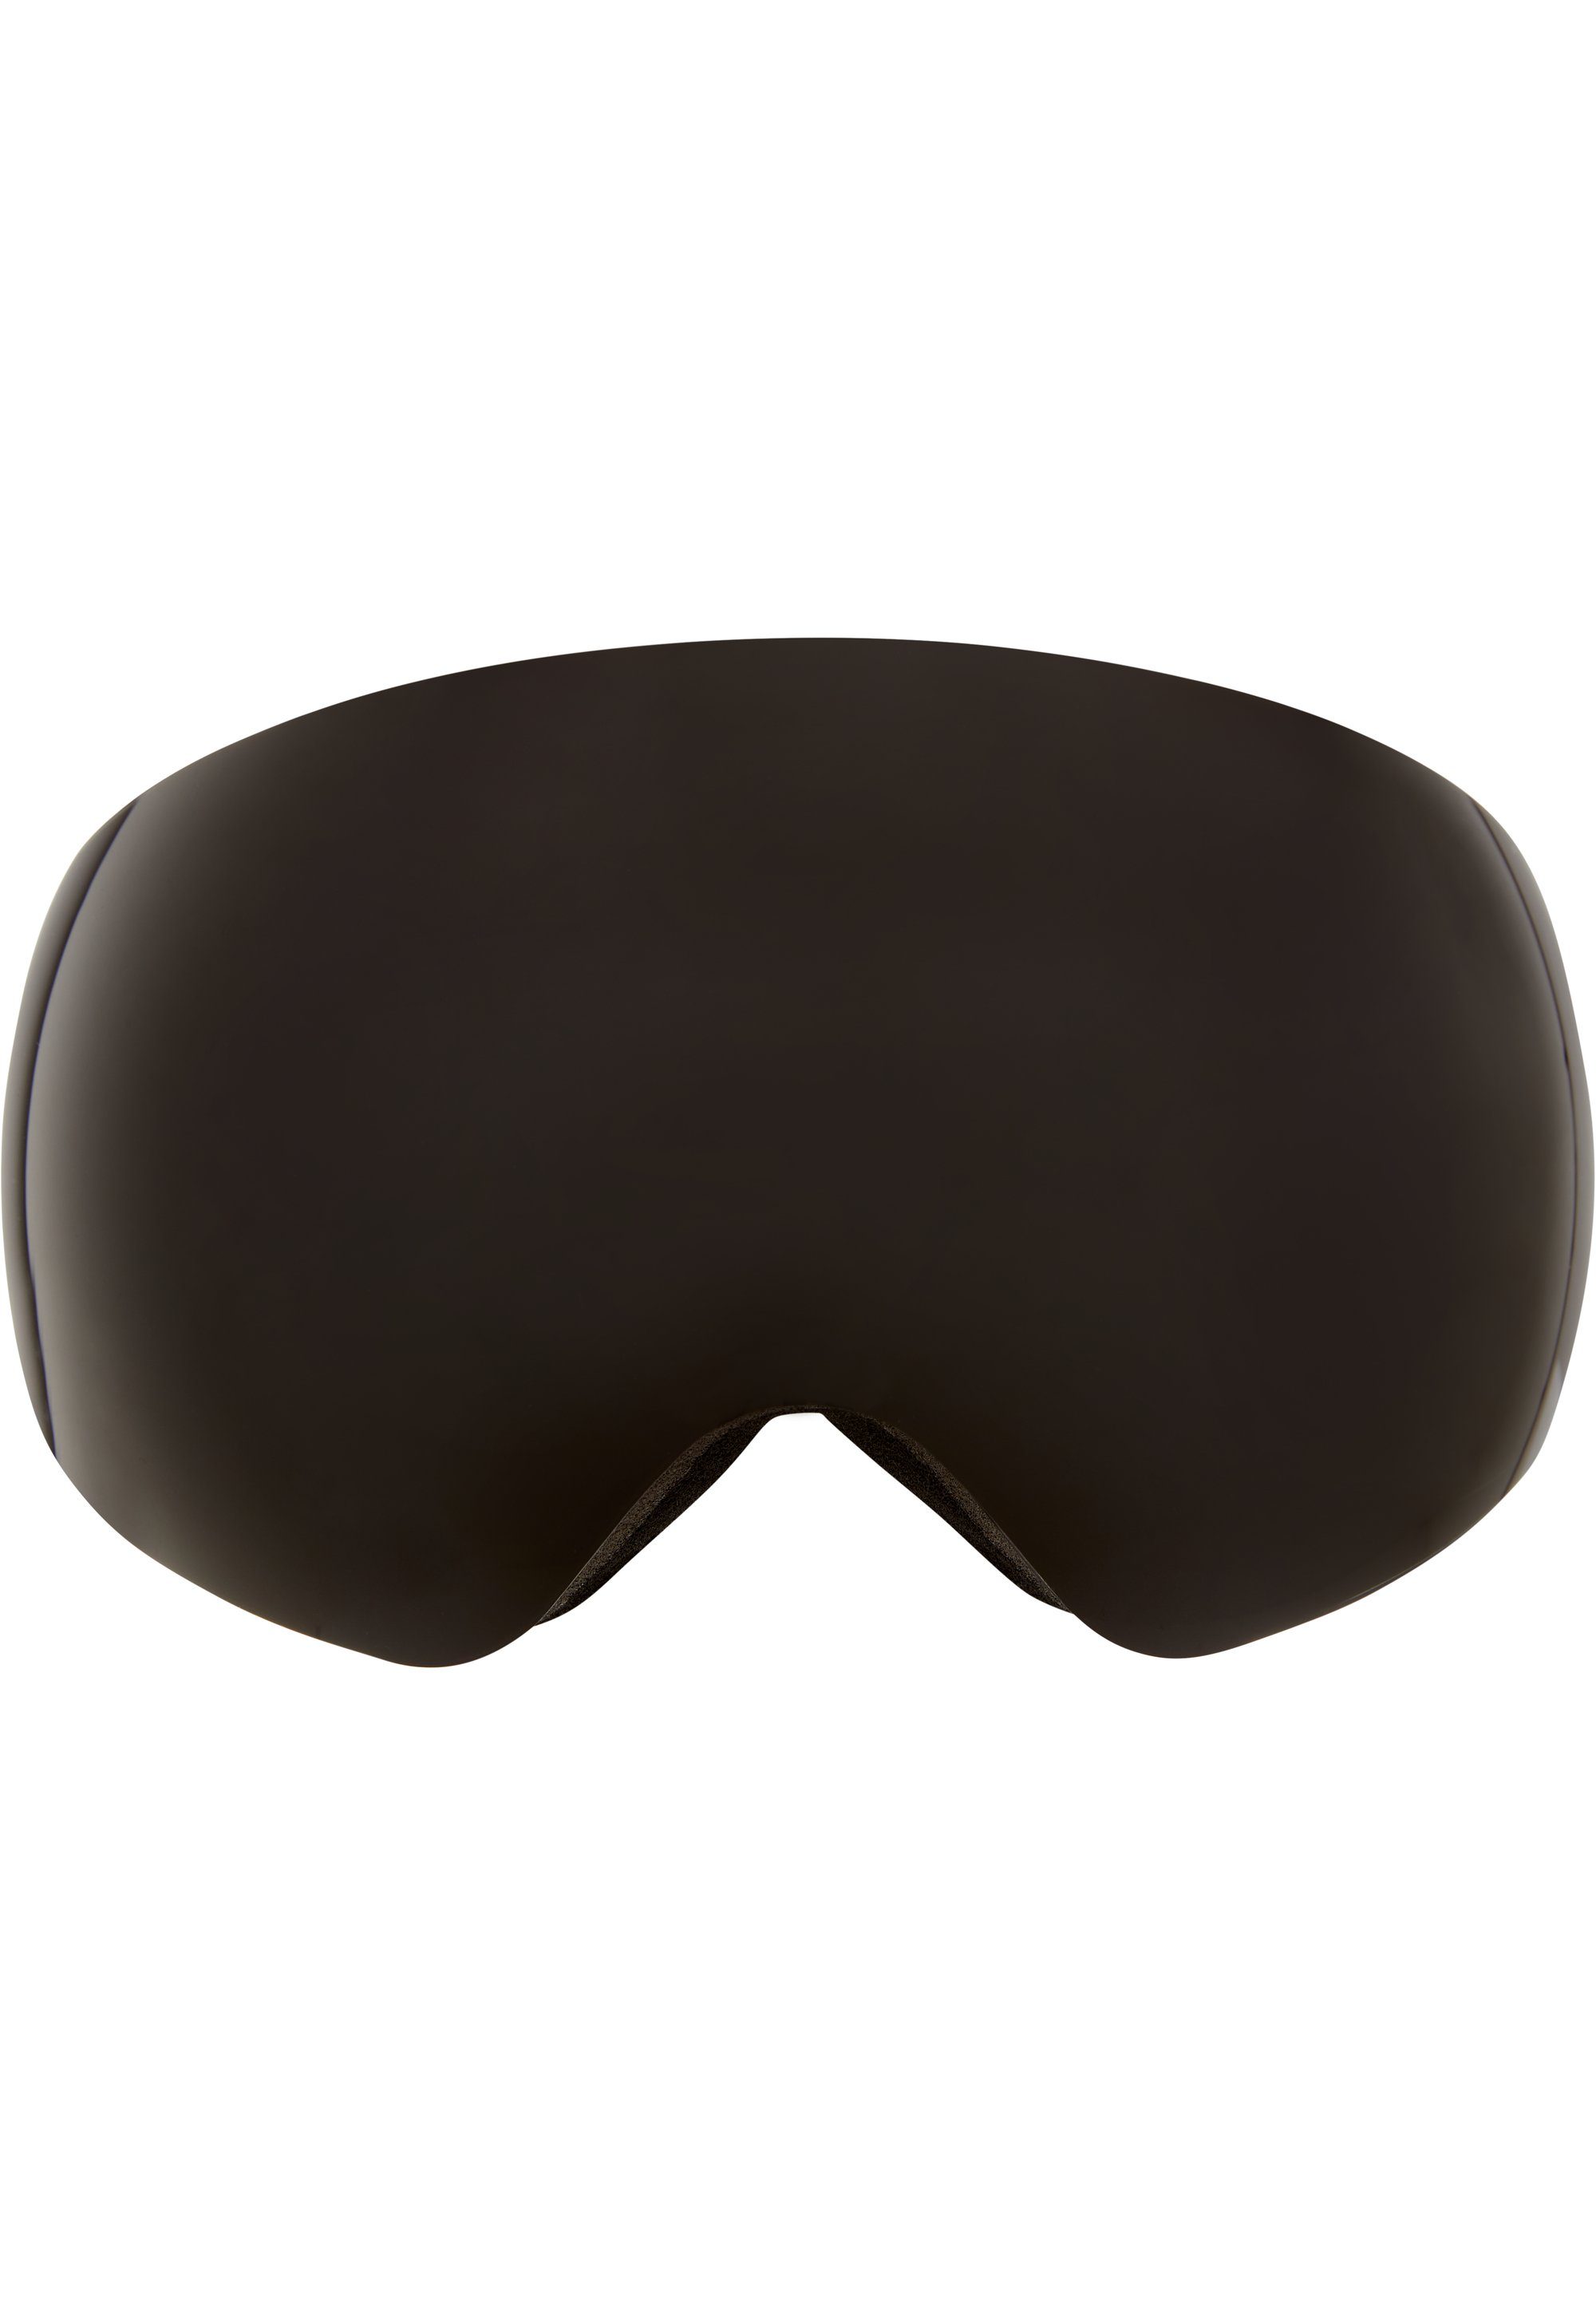 Realisierung extrem niedriger Preise WHISTLER Skibrille WS6100, schwarz Anti-Fog-Beschichtung mit praktischer